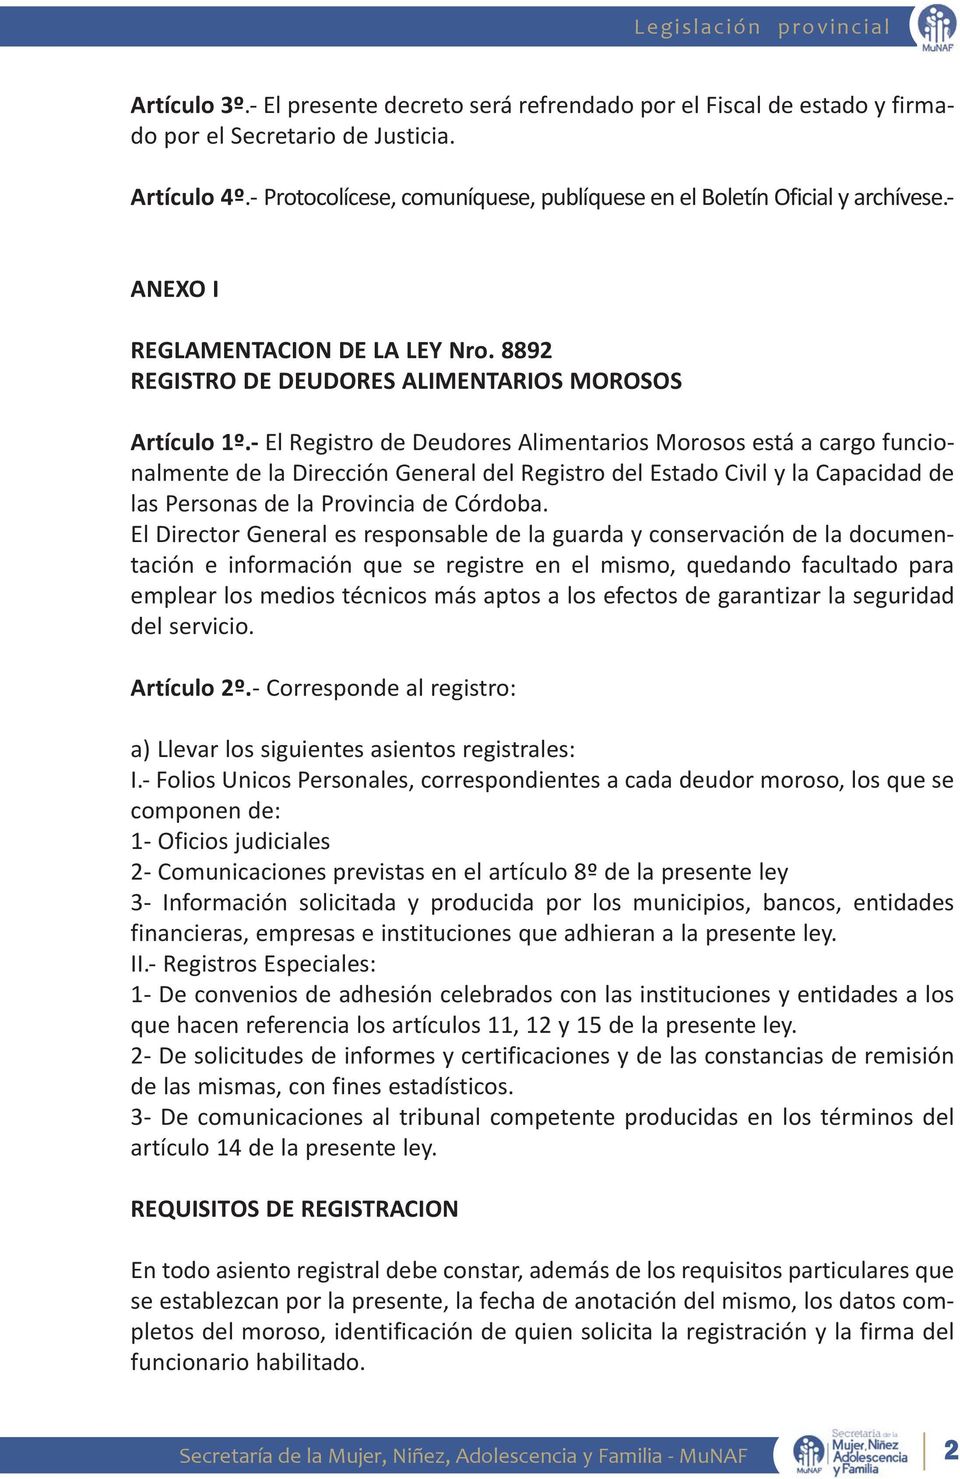 - El Registro de Deudores Alimentarios Morosos está a cargo funcionalmente de la Dirección General del Registro del Estado Civil y la Capacidad de las Personas de la Provincia de Córdoba.